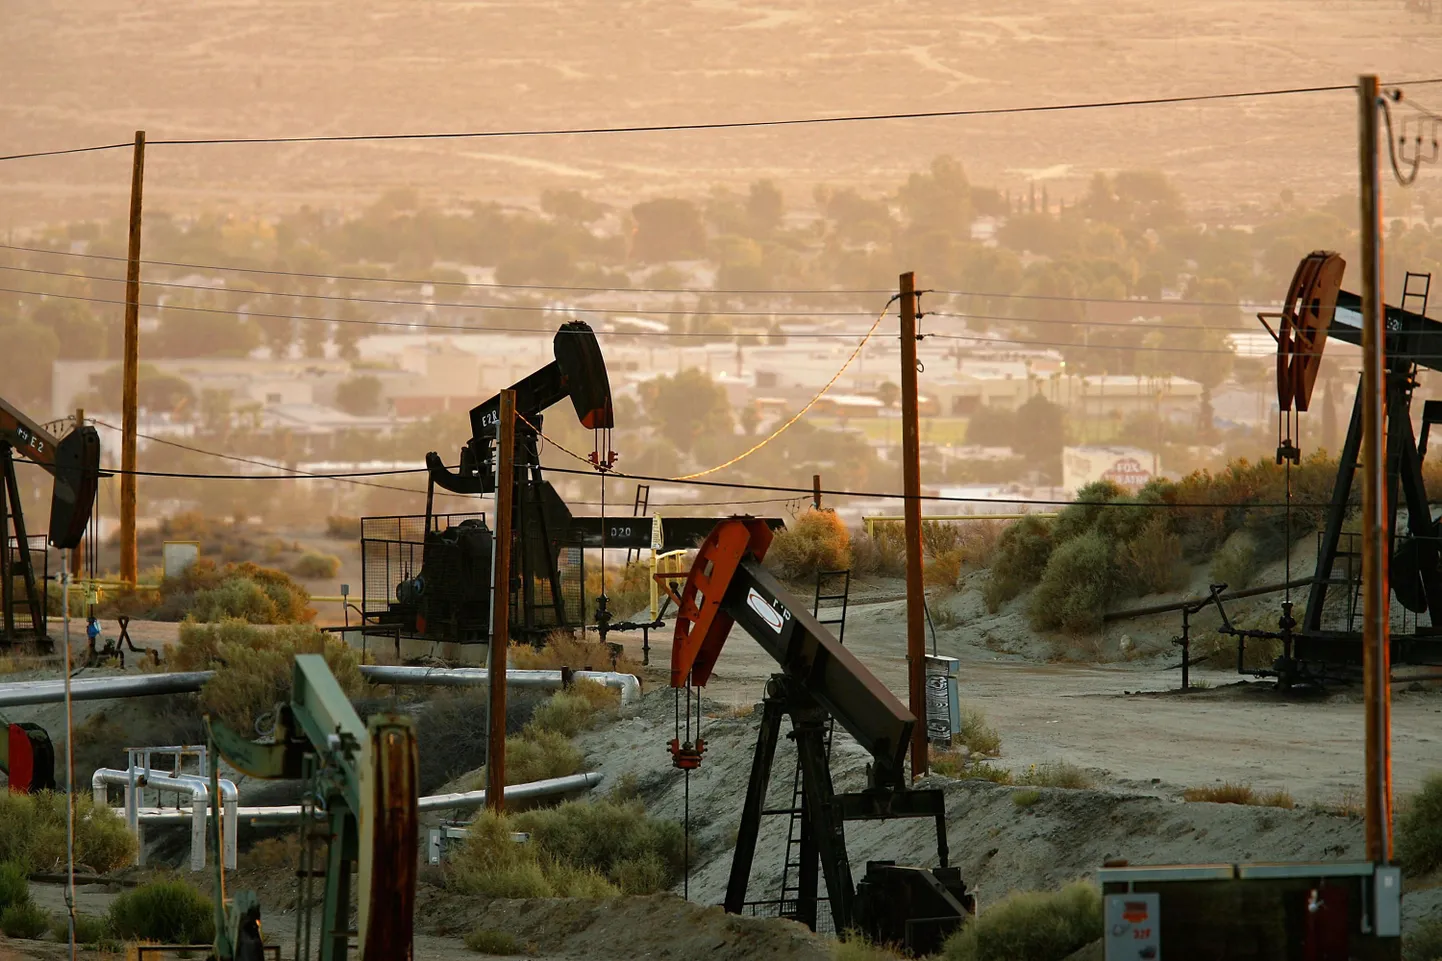 Chevroni naftapuurtornid Taftis California osariigis.